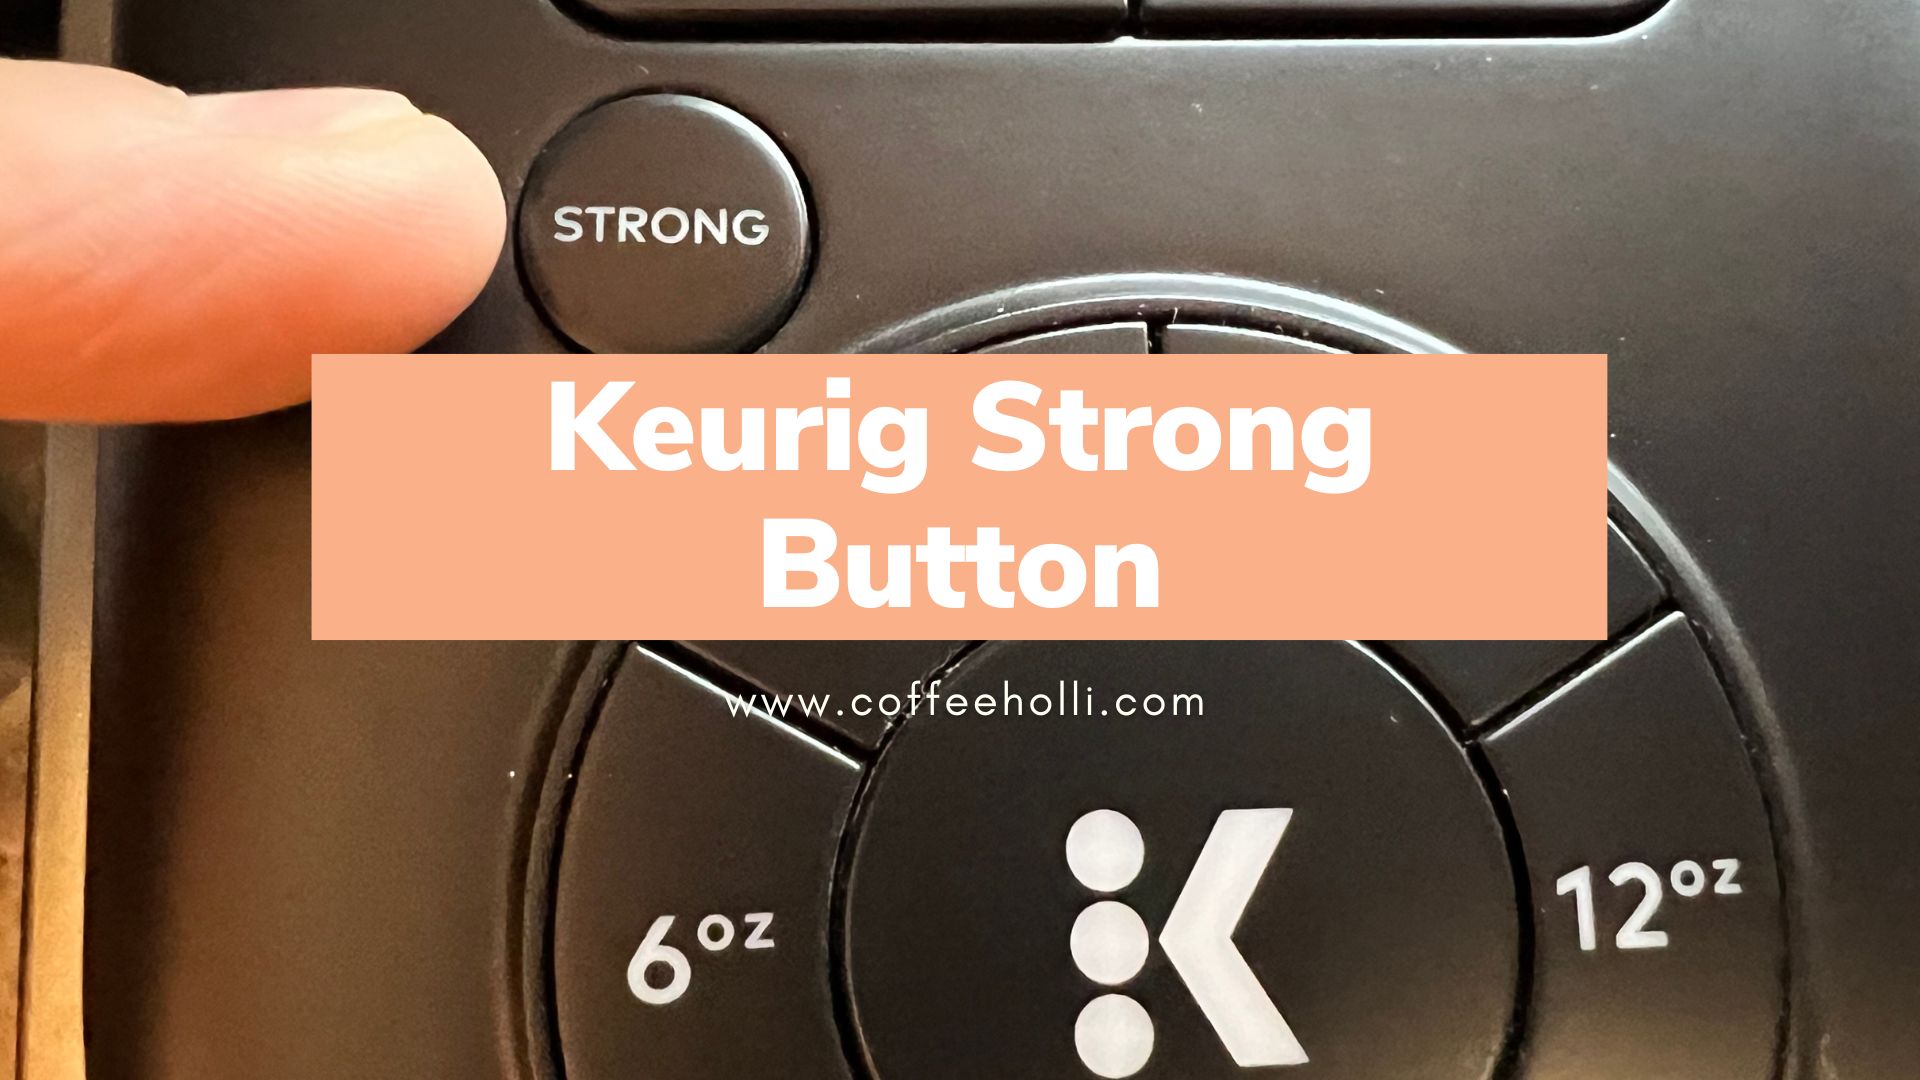 Keurig Strong Button